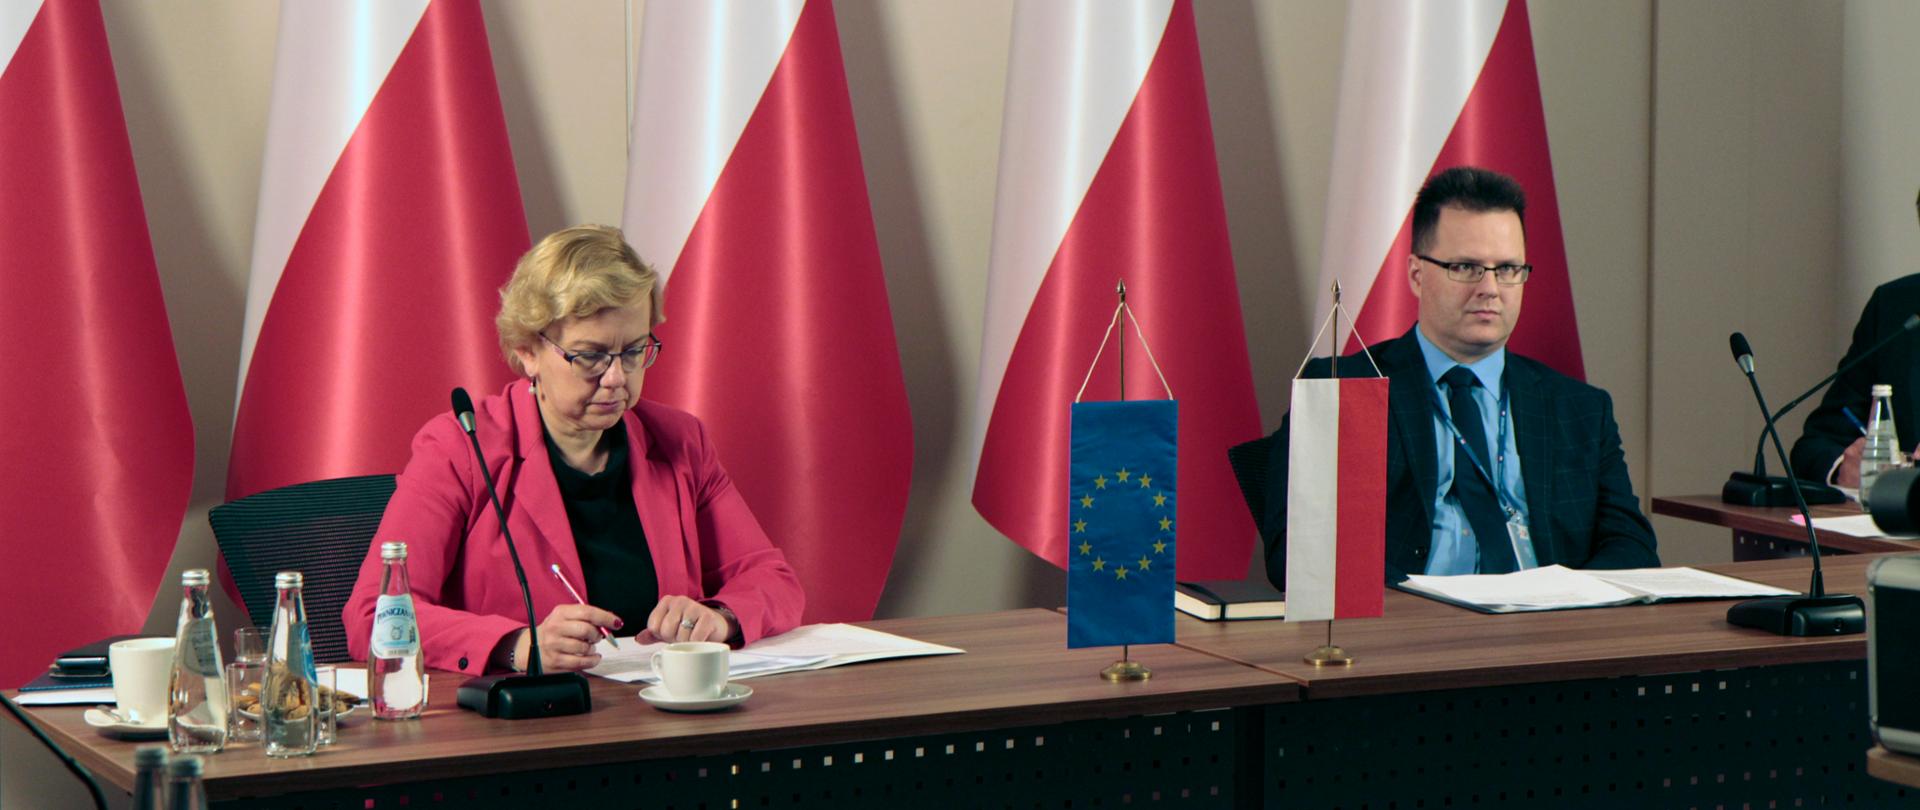 Na zdjęciu widać dwie osoby, które siedzą przy stole, są to kobieta i mężczyzna. Przed nimi leżą dokumenty, a w ich tle widać biało-czerwone flagi. Na środku stołu stoi mała flaga, symbol Unii Europejskiej